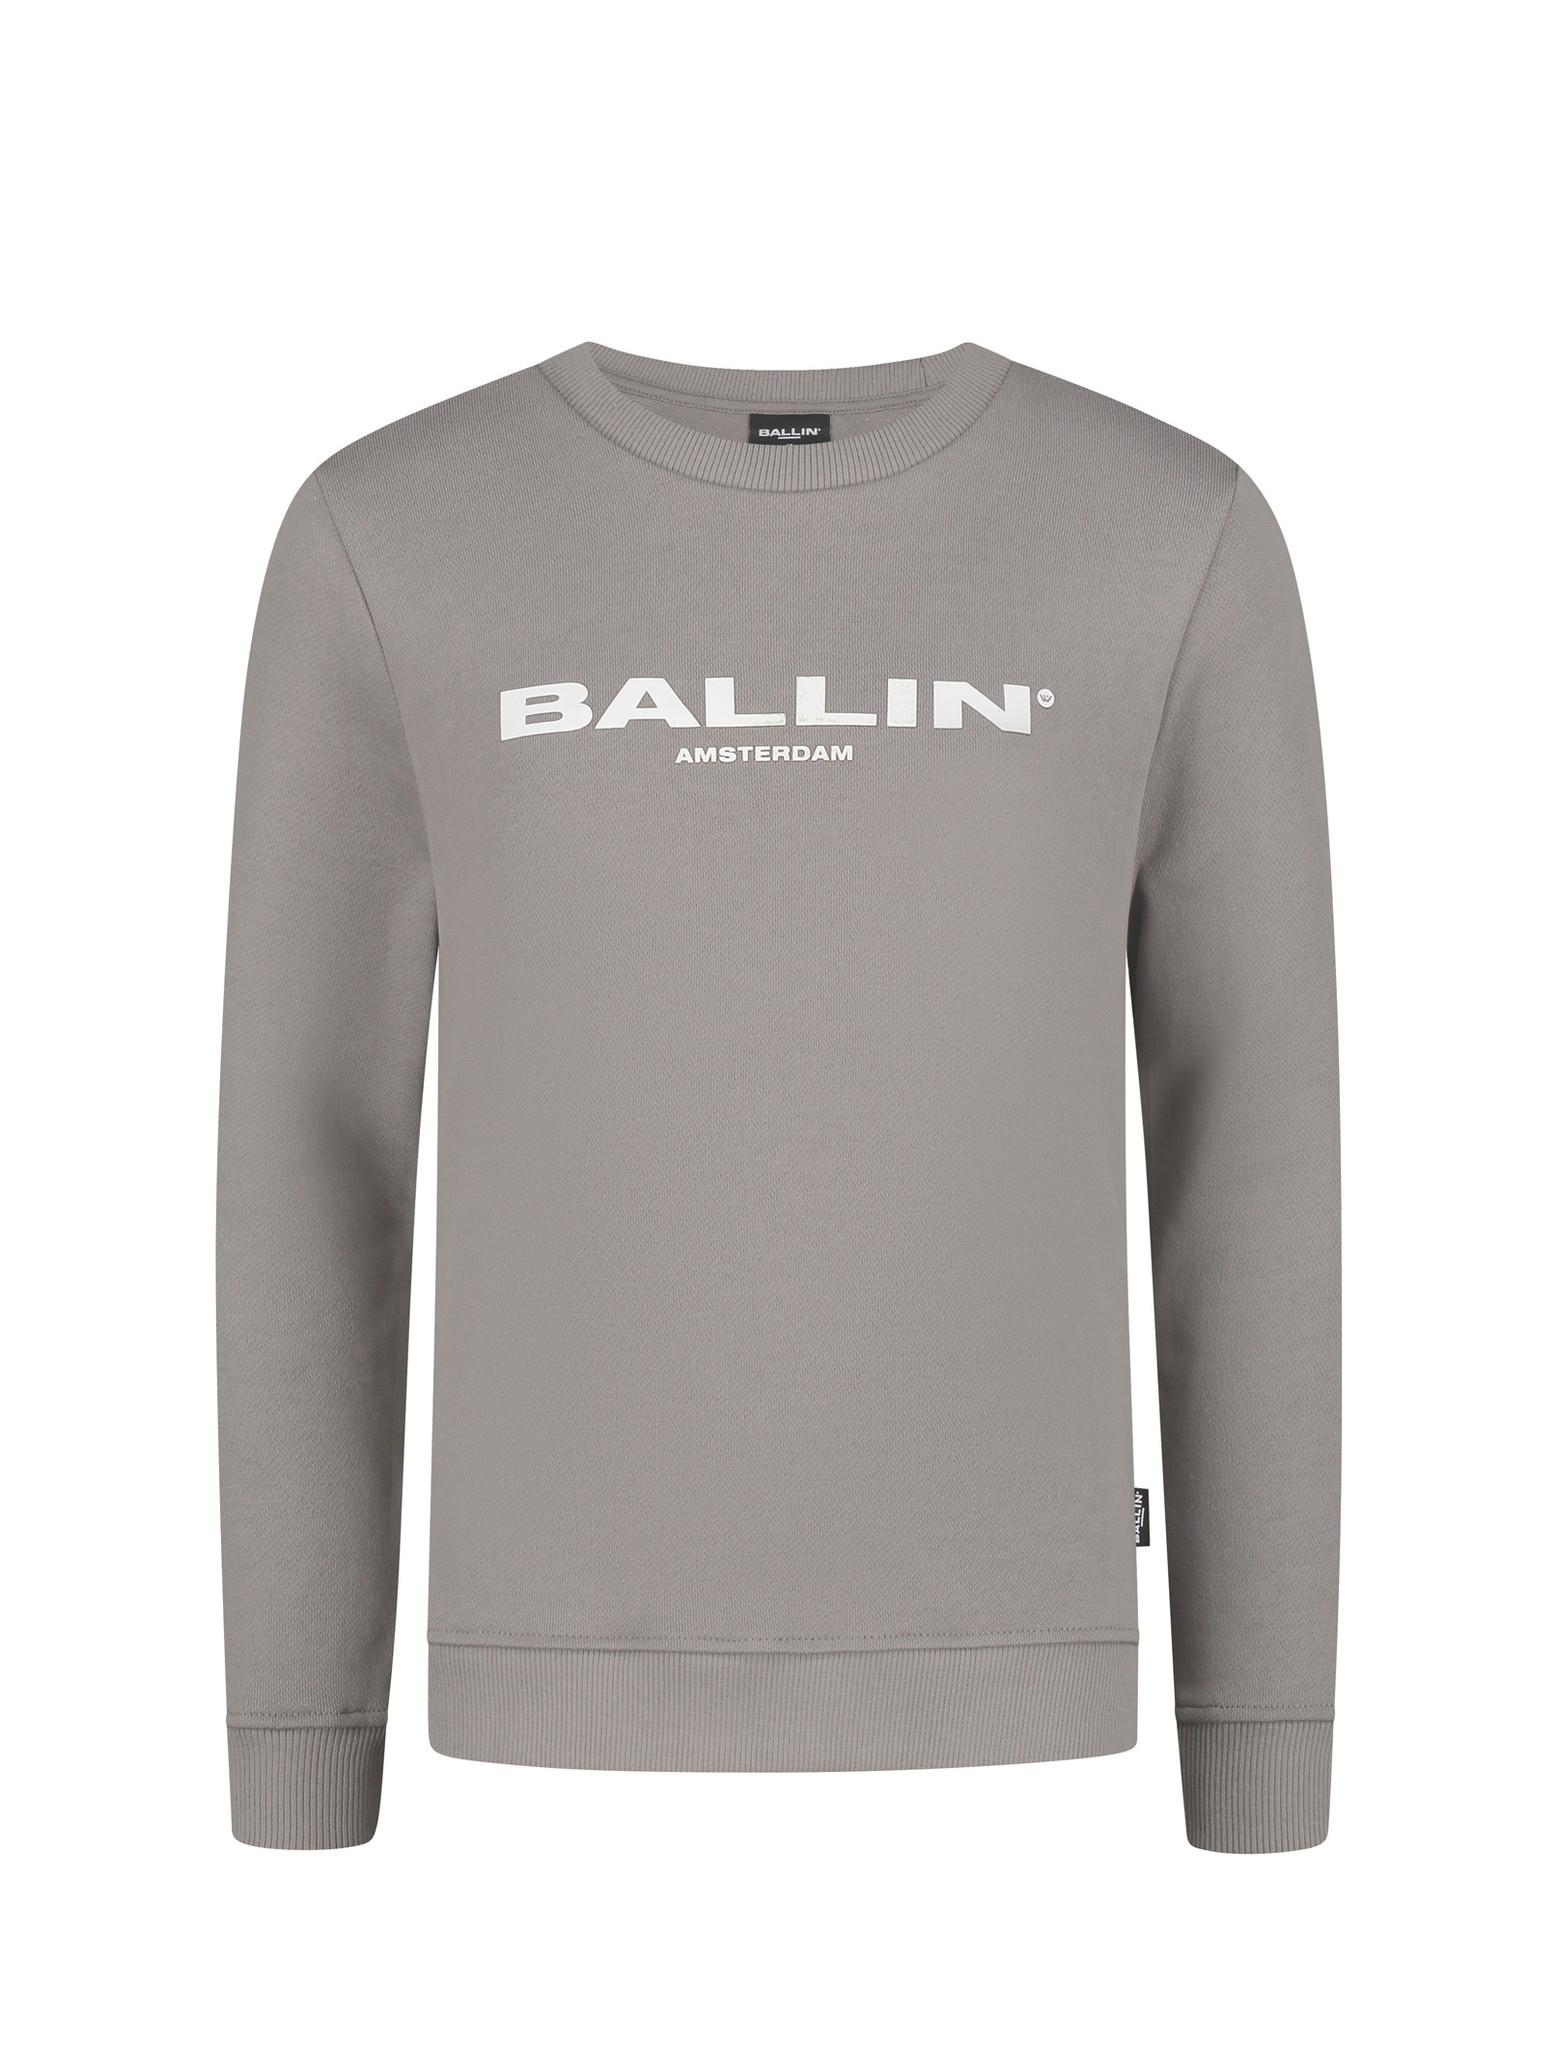 Ballin Jongens - Taupe - merkmeisjeskleding.nl